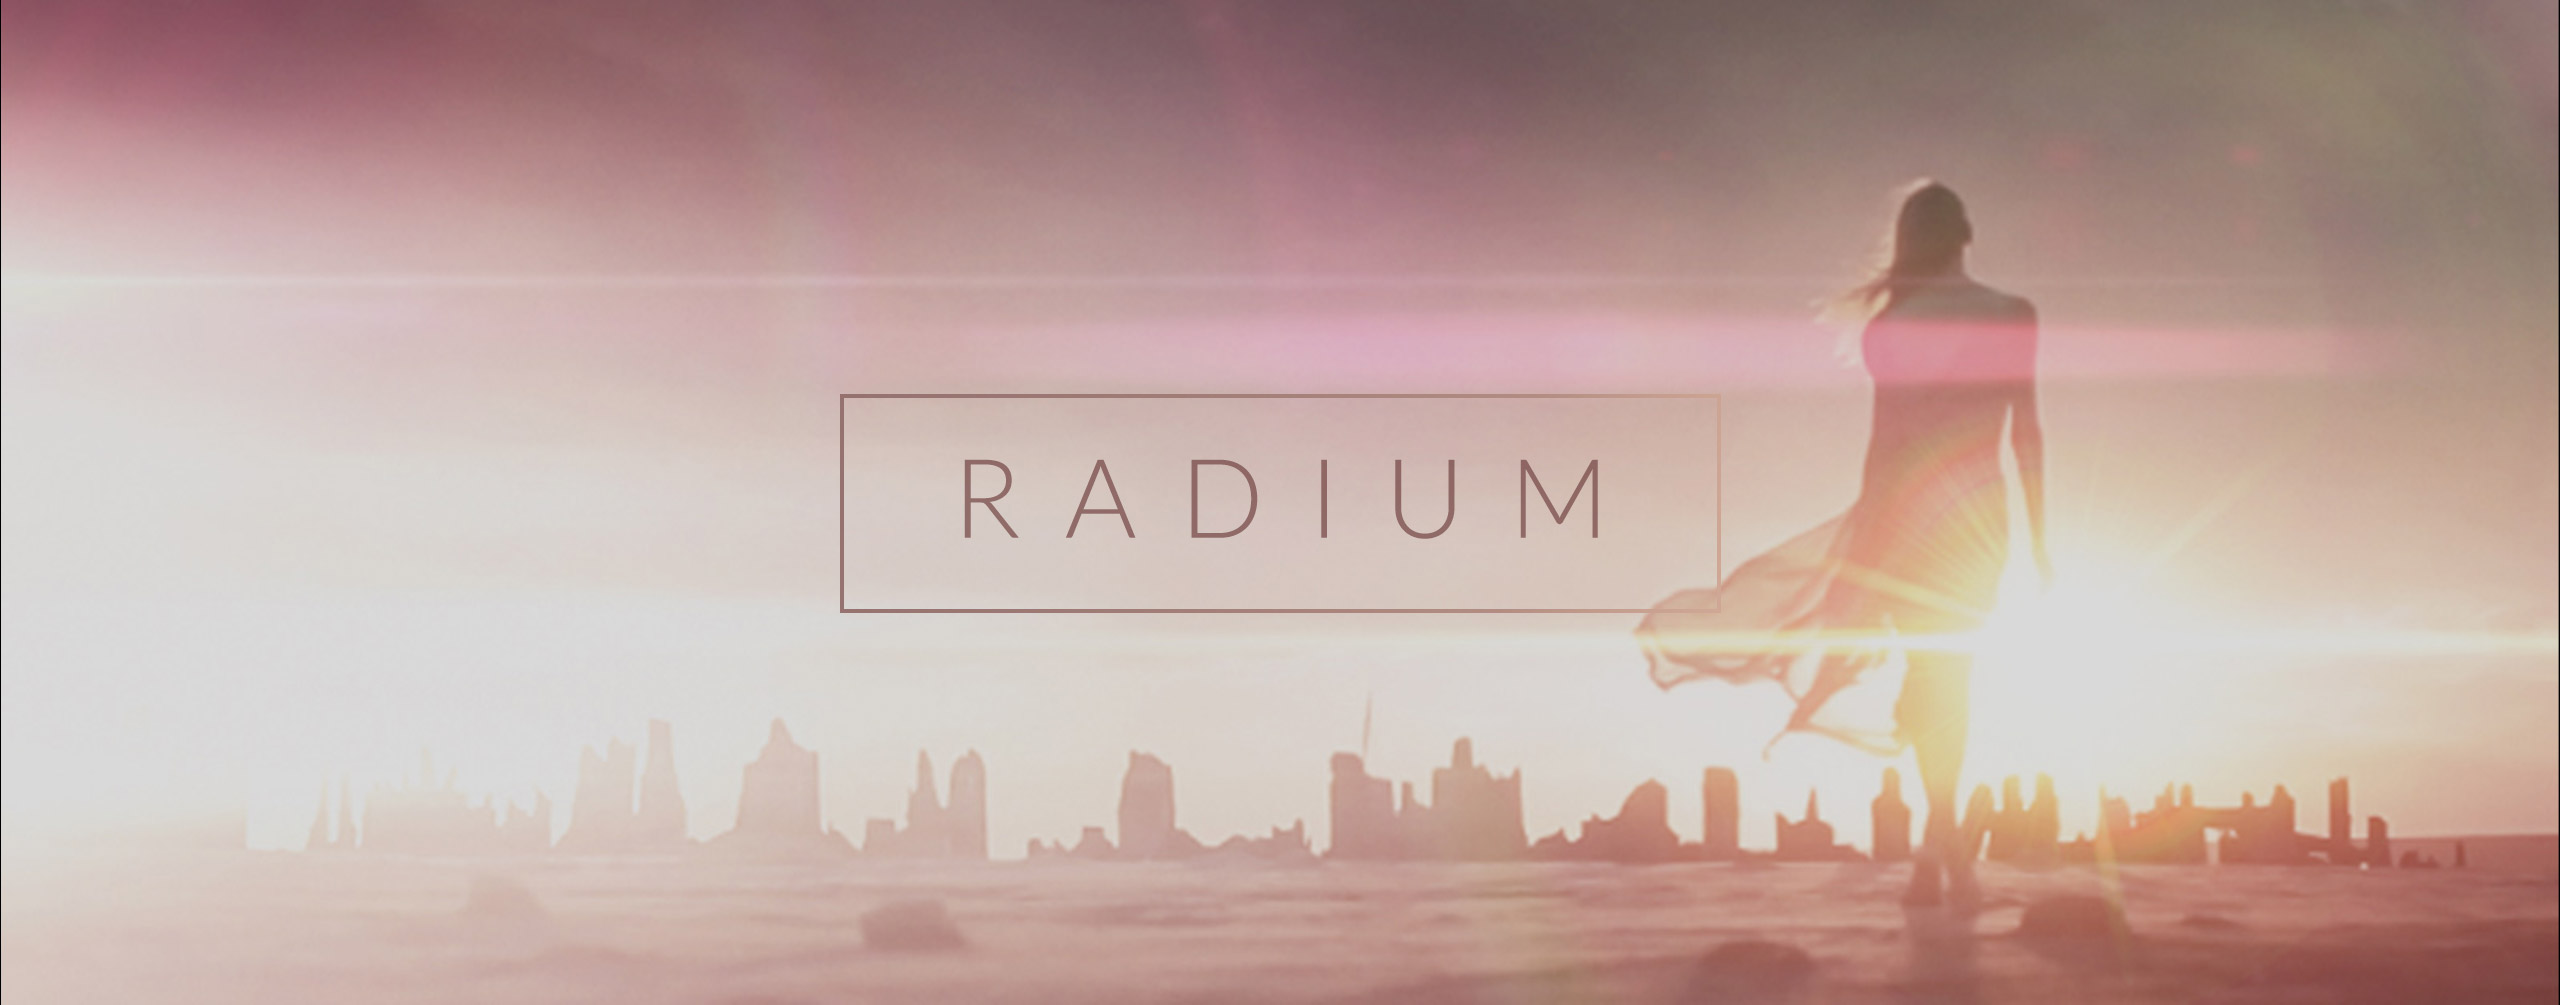 Radium - Lens Flares in 4K